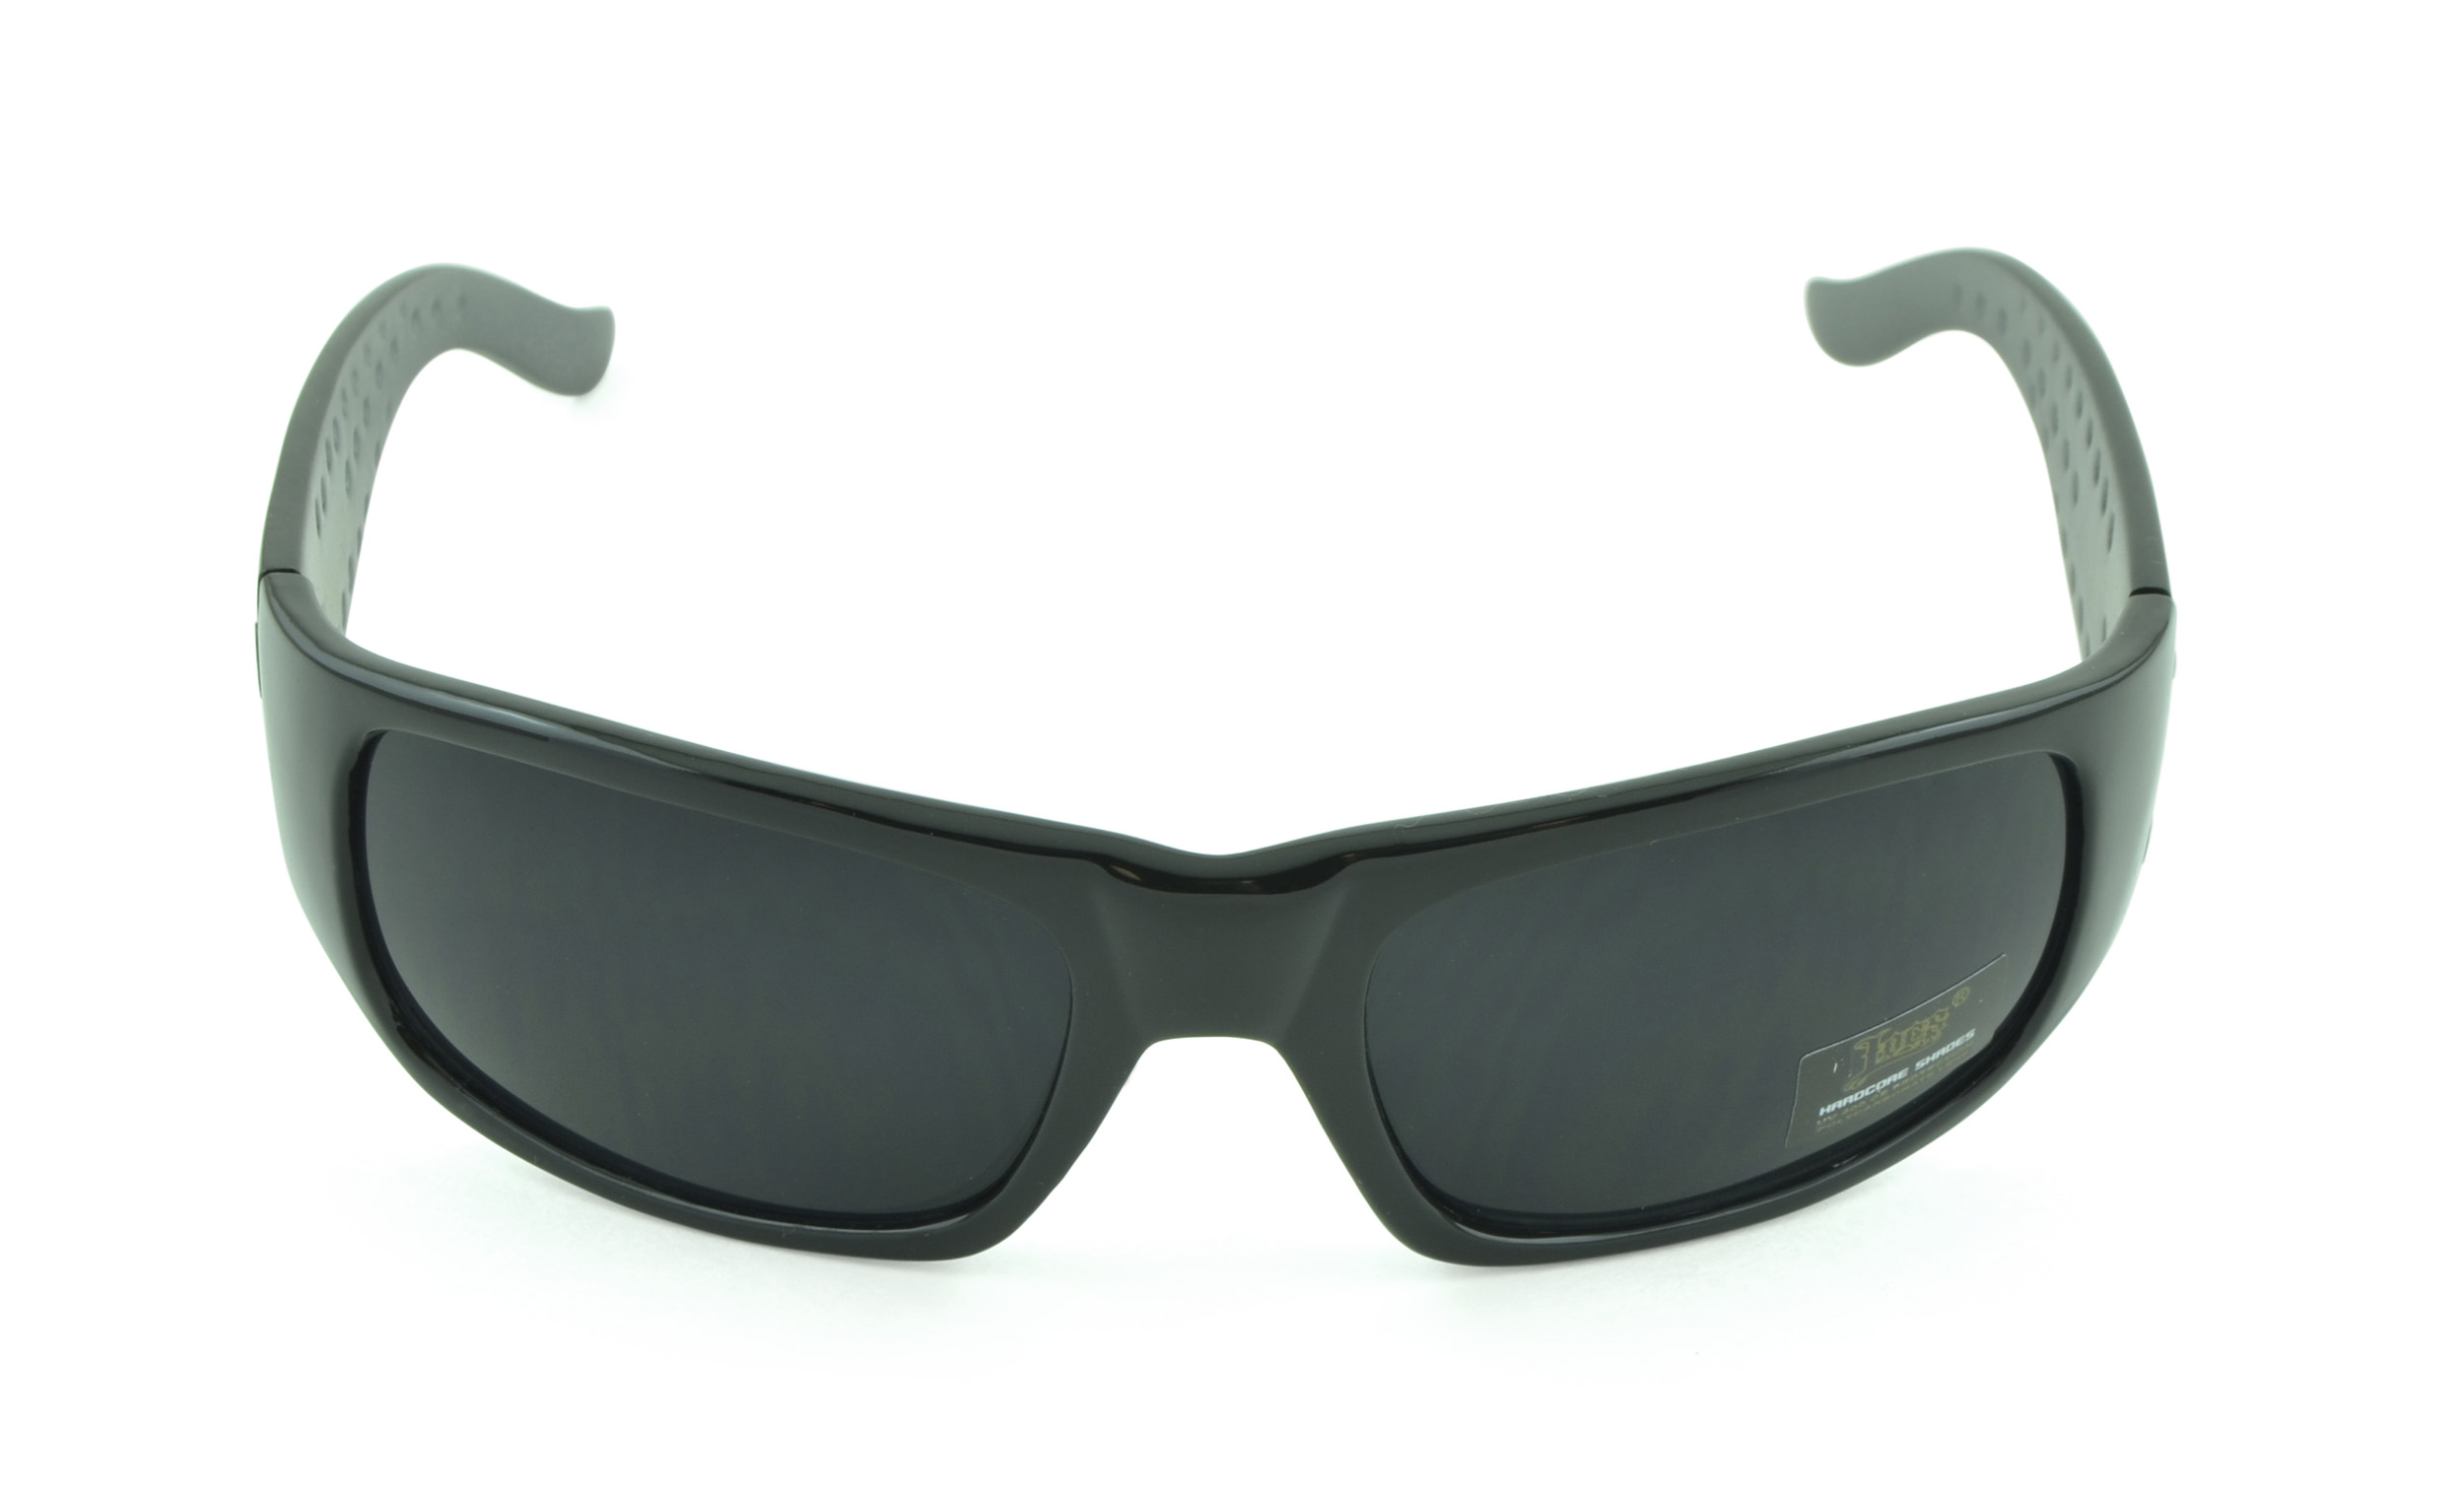 Belle Donne- Gangster Sunglass Hardcore Dark Lens Sunglasses Men Women - Gray